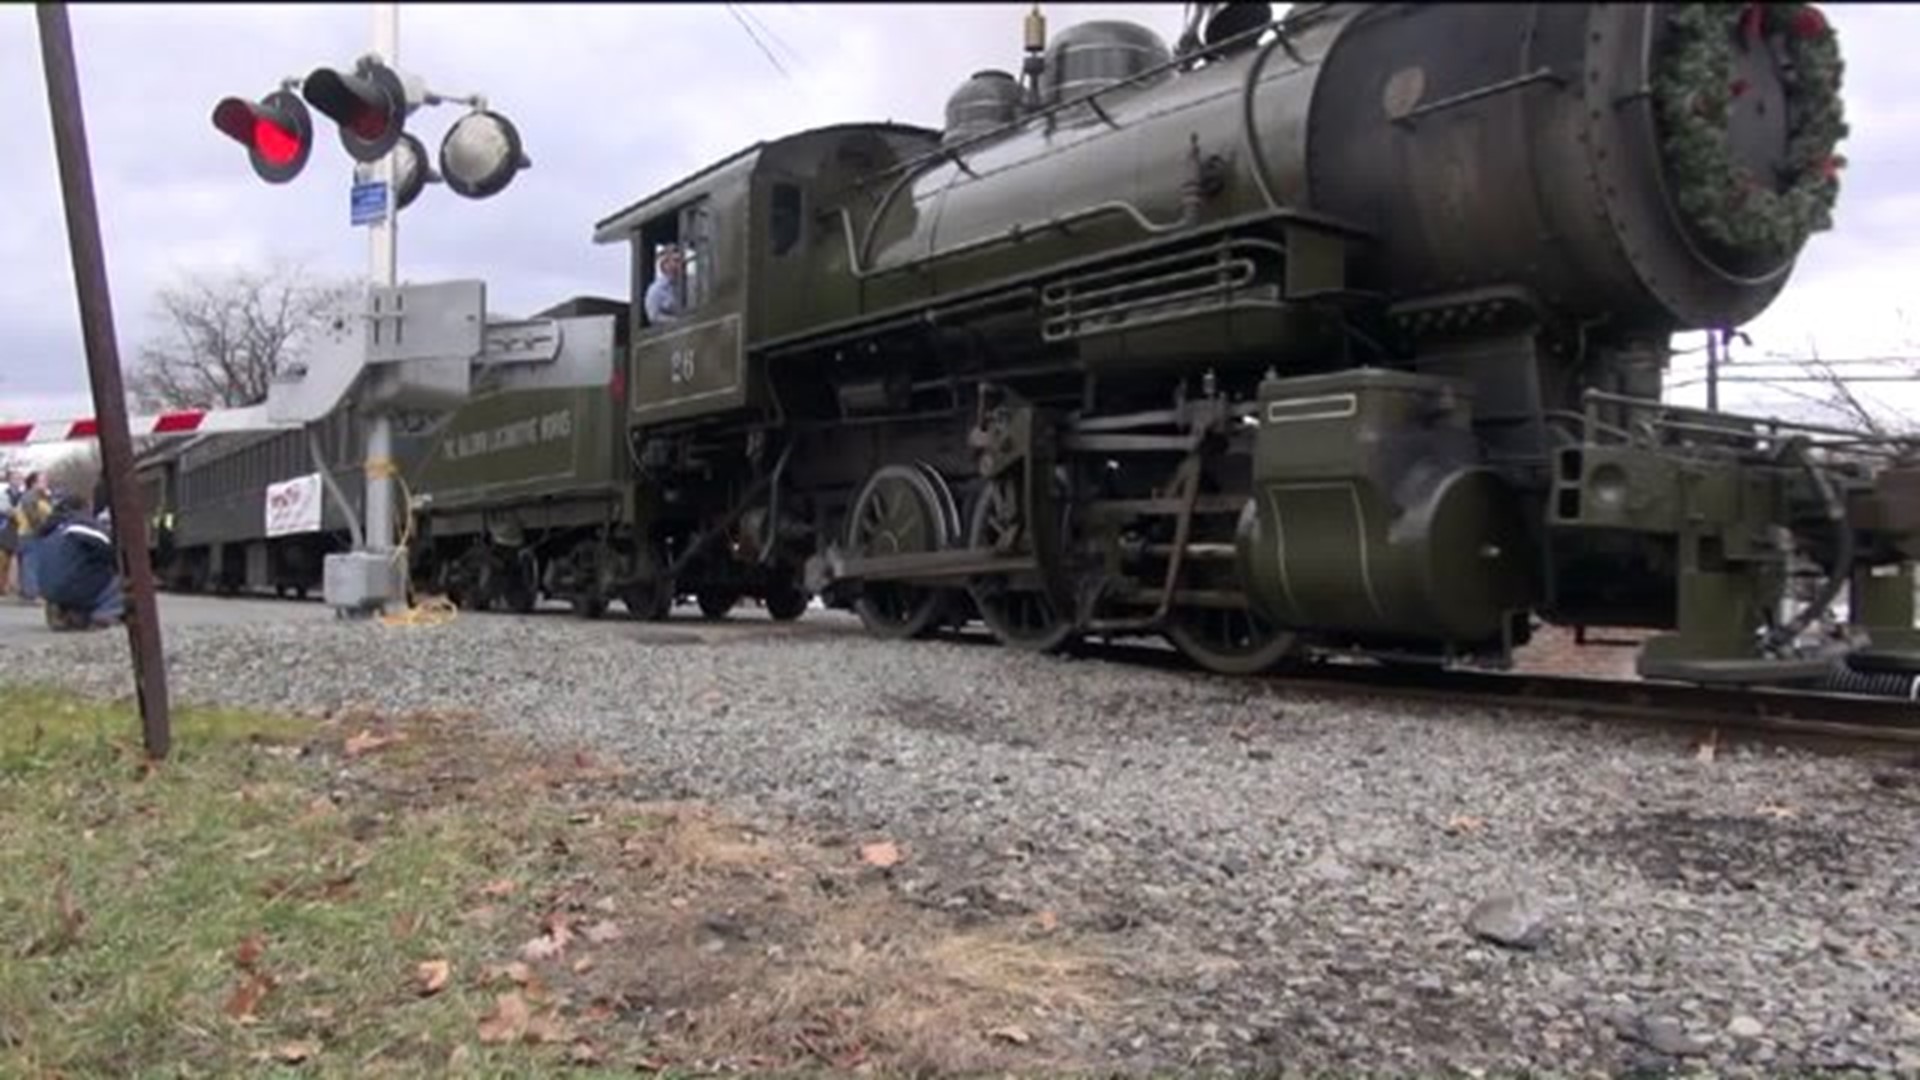 Santa Ditches Sleigh, Rides Train Through Lackawanna County